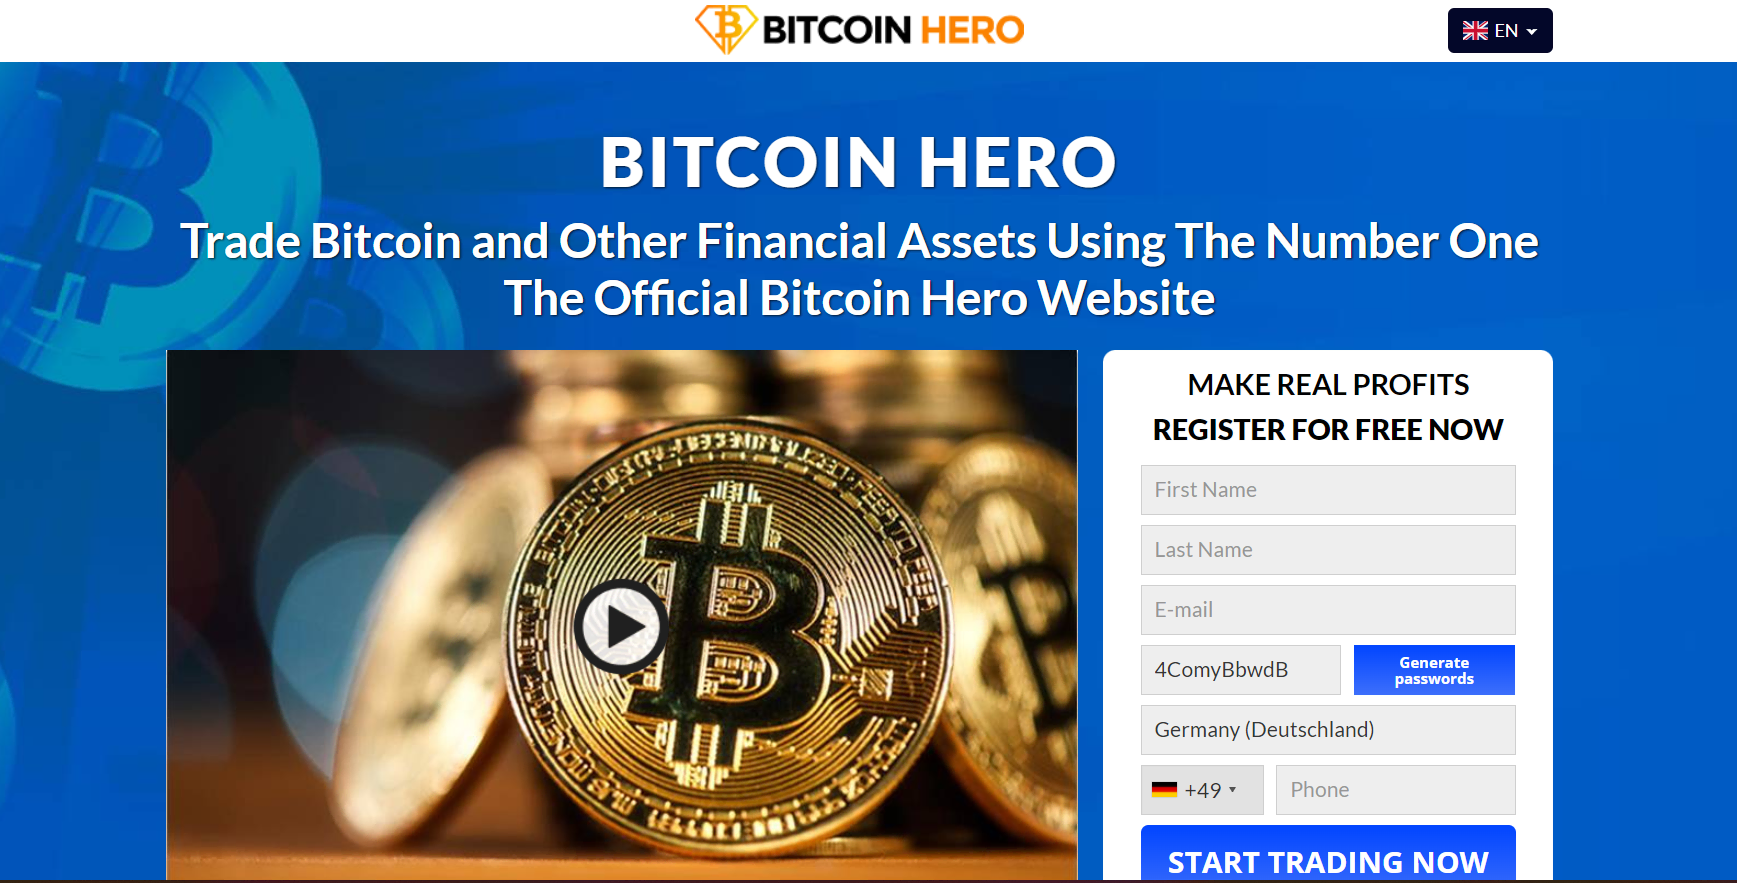 Bitcoin Hero'nin resmi web sitesi